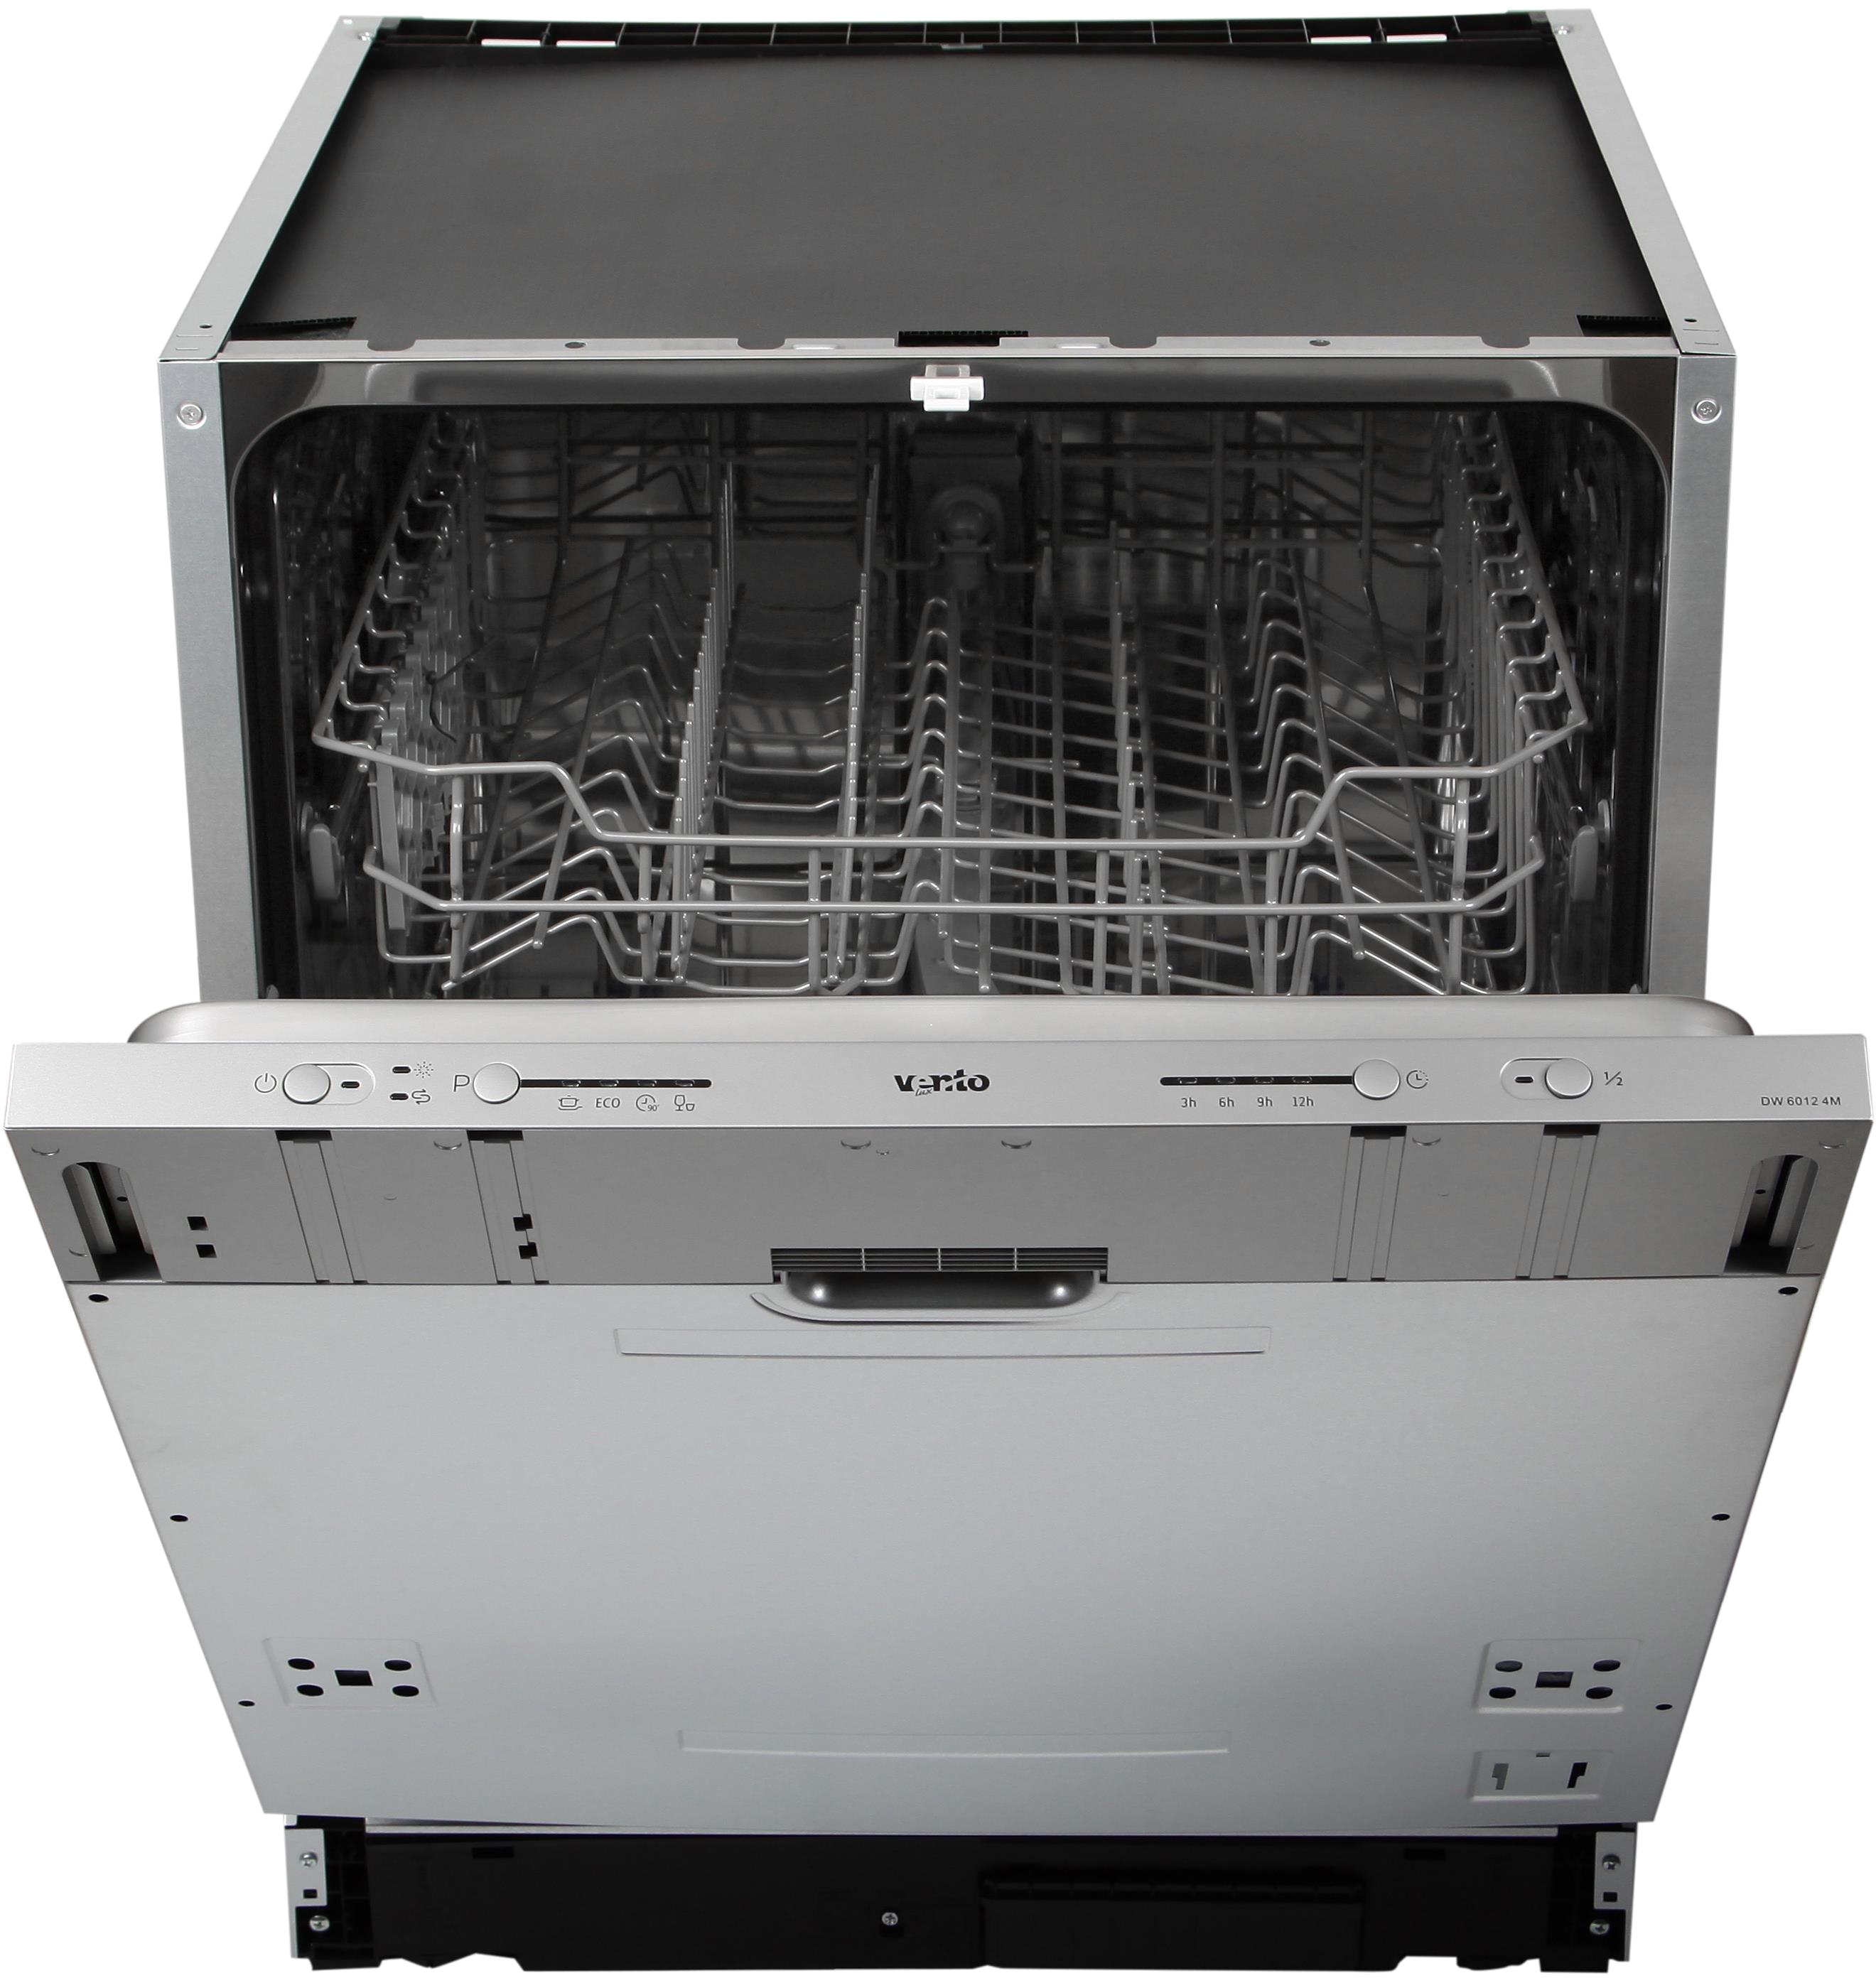 Посудомоечная машина Ventolux DW 6012 4М в интернет-магазине, главное фото